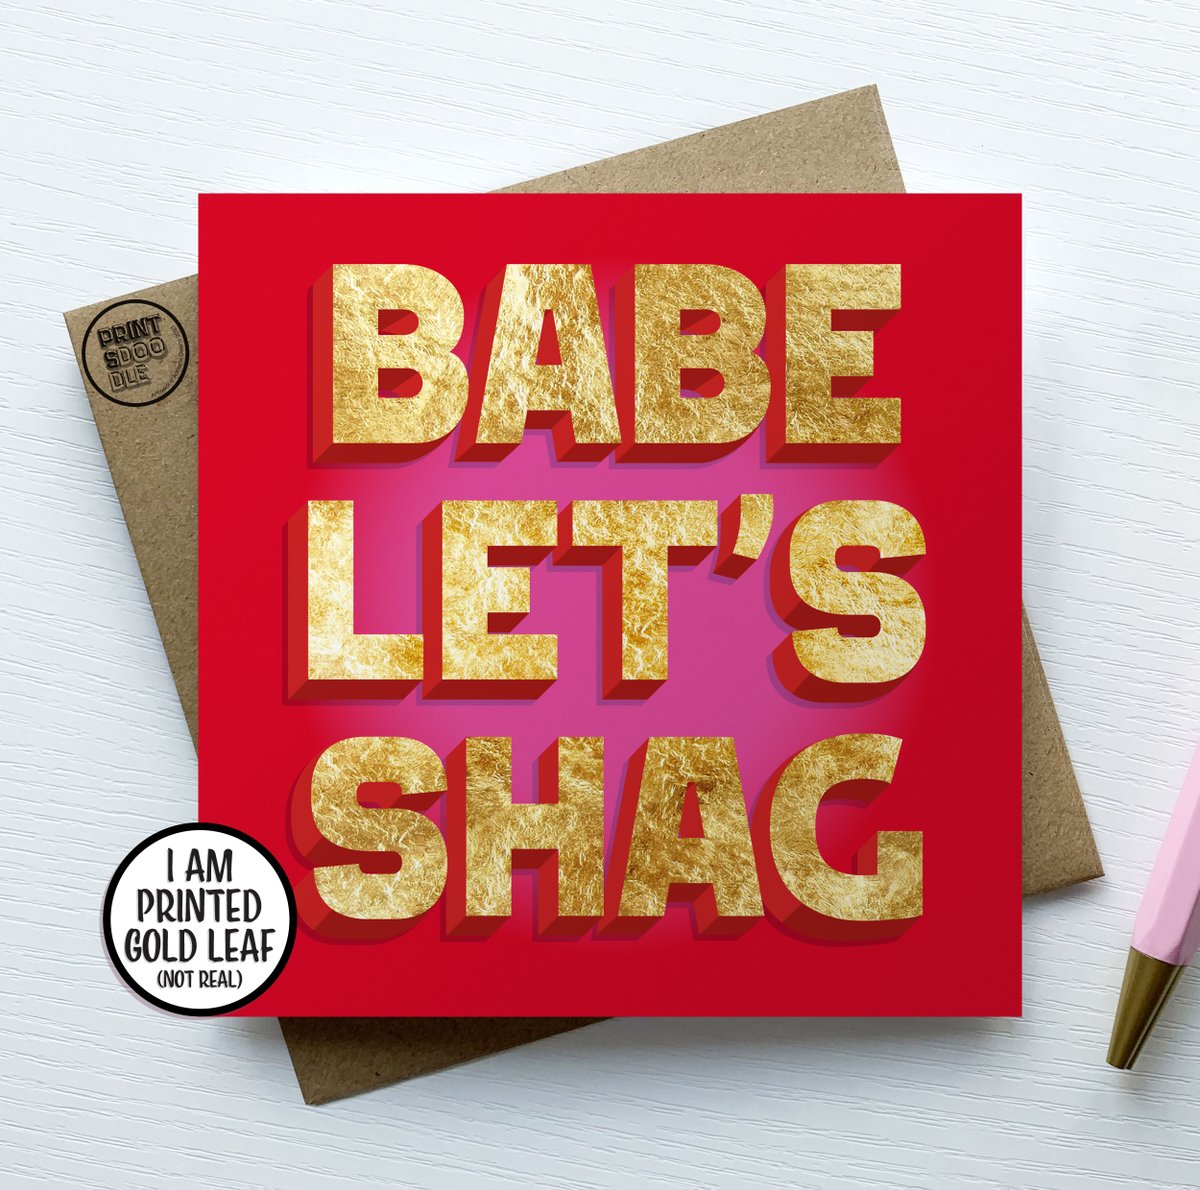 Babe Lets Shag Funny Valentine Card #greetingcards #adulthumour #funnyrudecard #love #valentinesday #giftideas #etsyuk #etsyseller #uksmallbiz #shopsmalluk #madeinwales #porthcawl
etsy.me/3ZIezvh via @Etsy